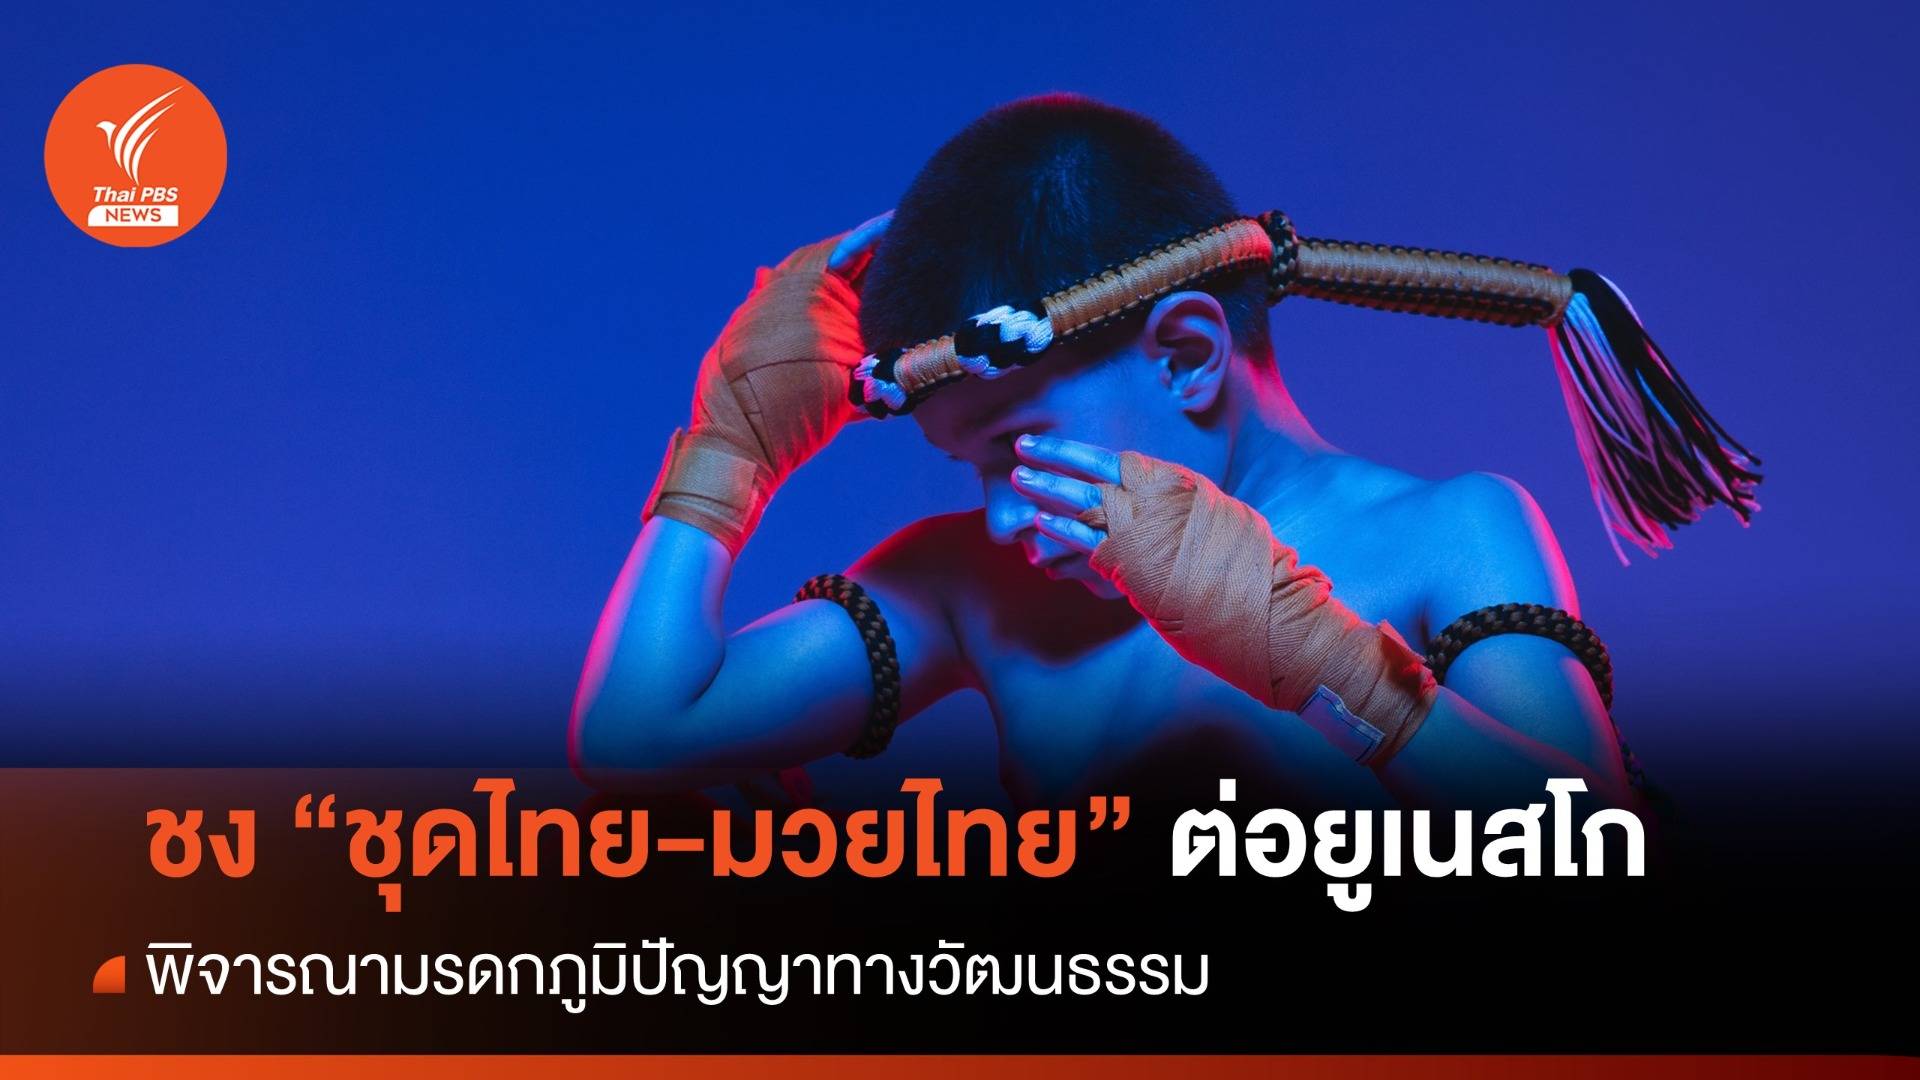 ชงมรดกภูมิปัญญาทางวัฒนธรรม “ชุดไทย-มวยไทย” ต่อยูเนสโก